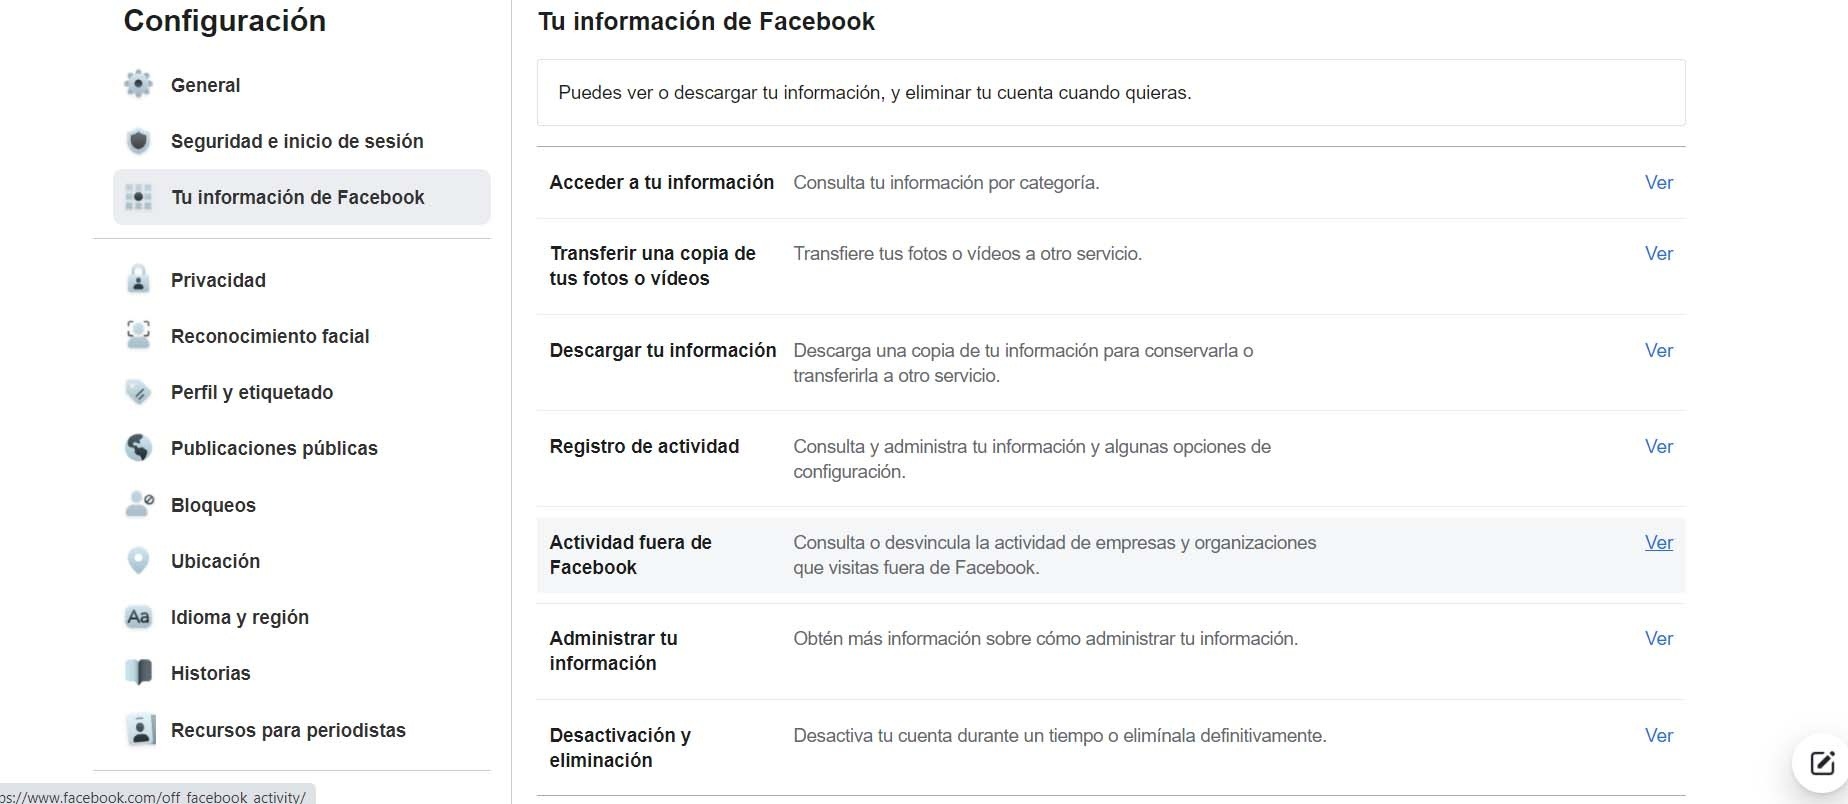 Trucos básicos para evitar que Facebook te rastree Redes Zone : Portal sobre telecomunicaciones y redes